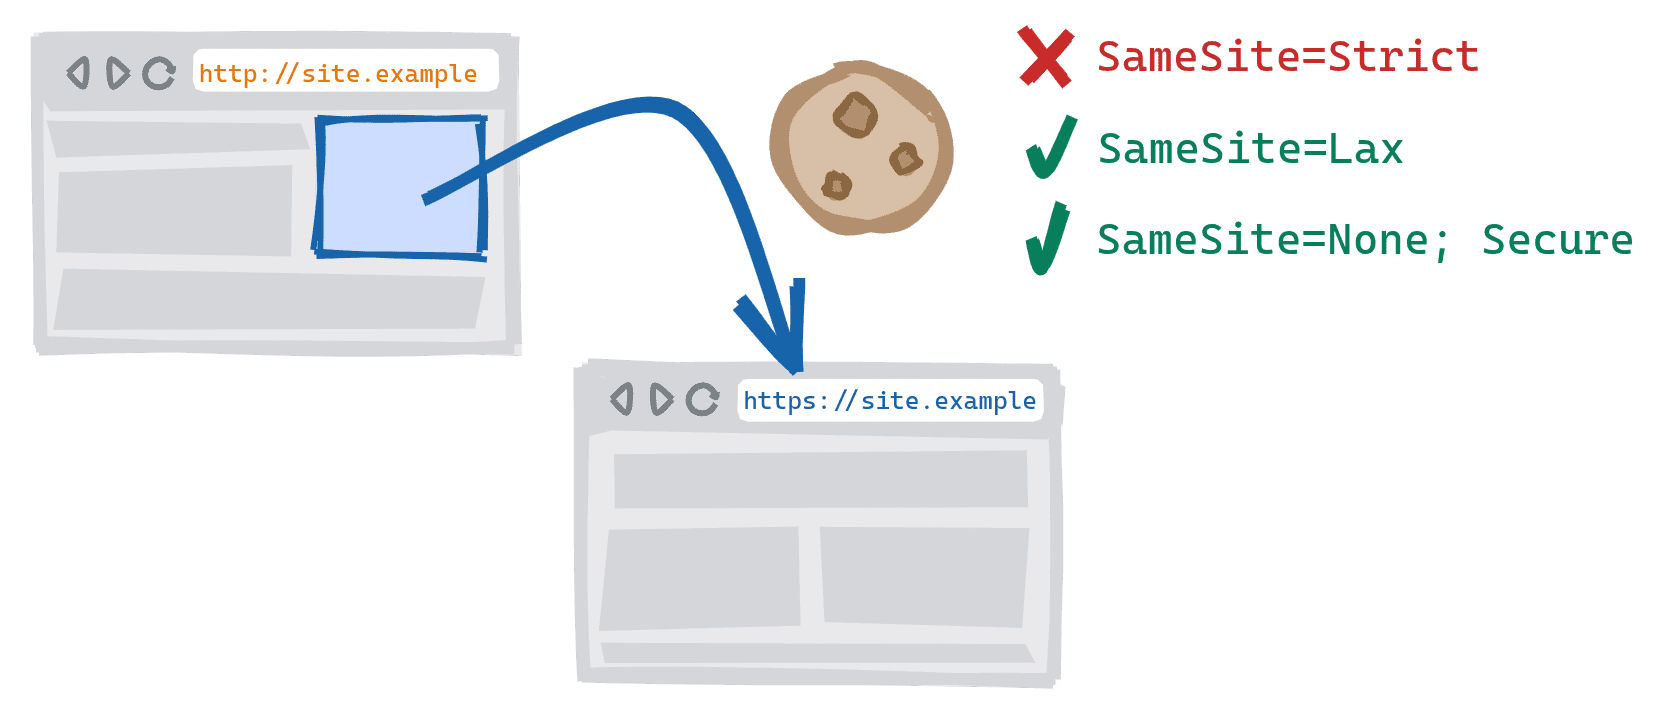 Межсхемная навигация, запускаемая при переходе по ссылке с небезопасной версии HTTP сайта на безопасную версию HTTPS. SameSite=Строгие файлы cookie заблокированы, SameSite=Lax и SameSite=None; Безопасные файлы cookie разрешены.